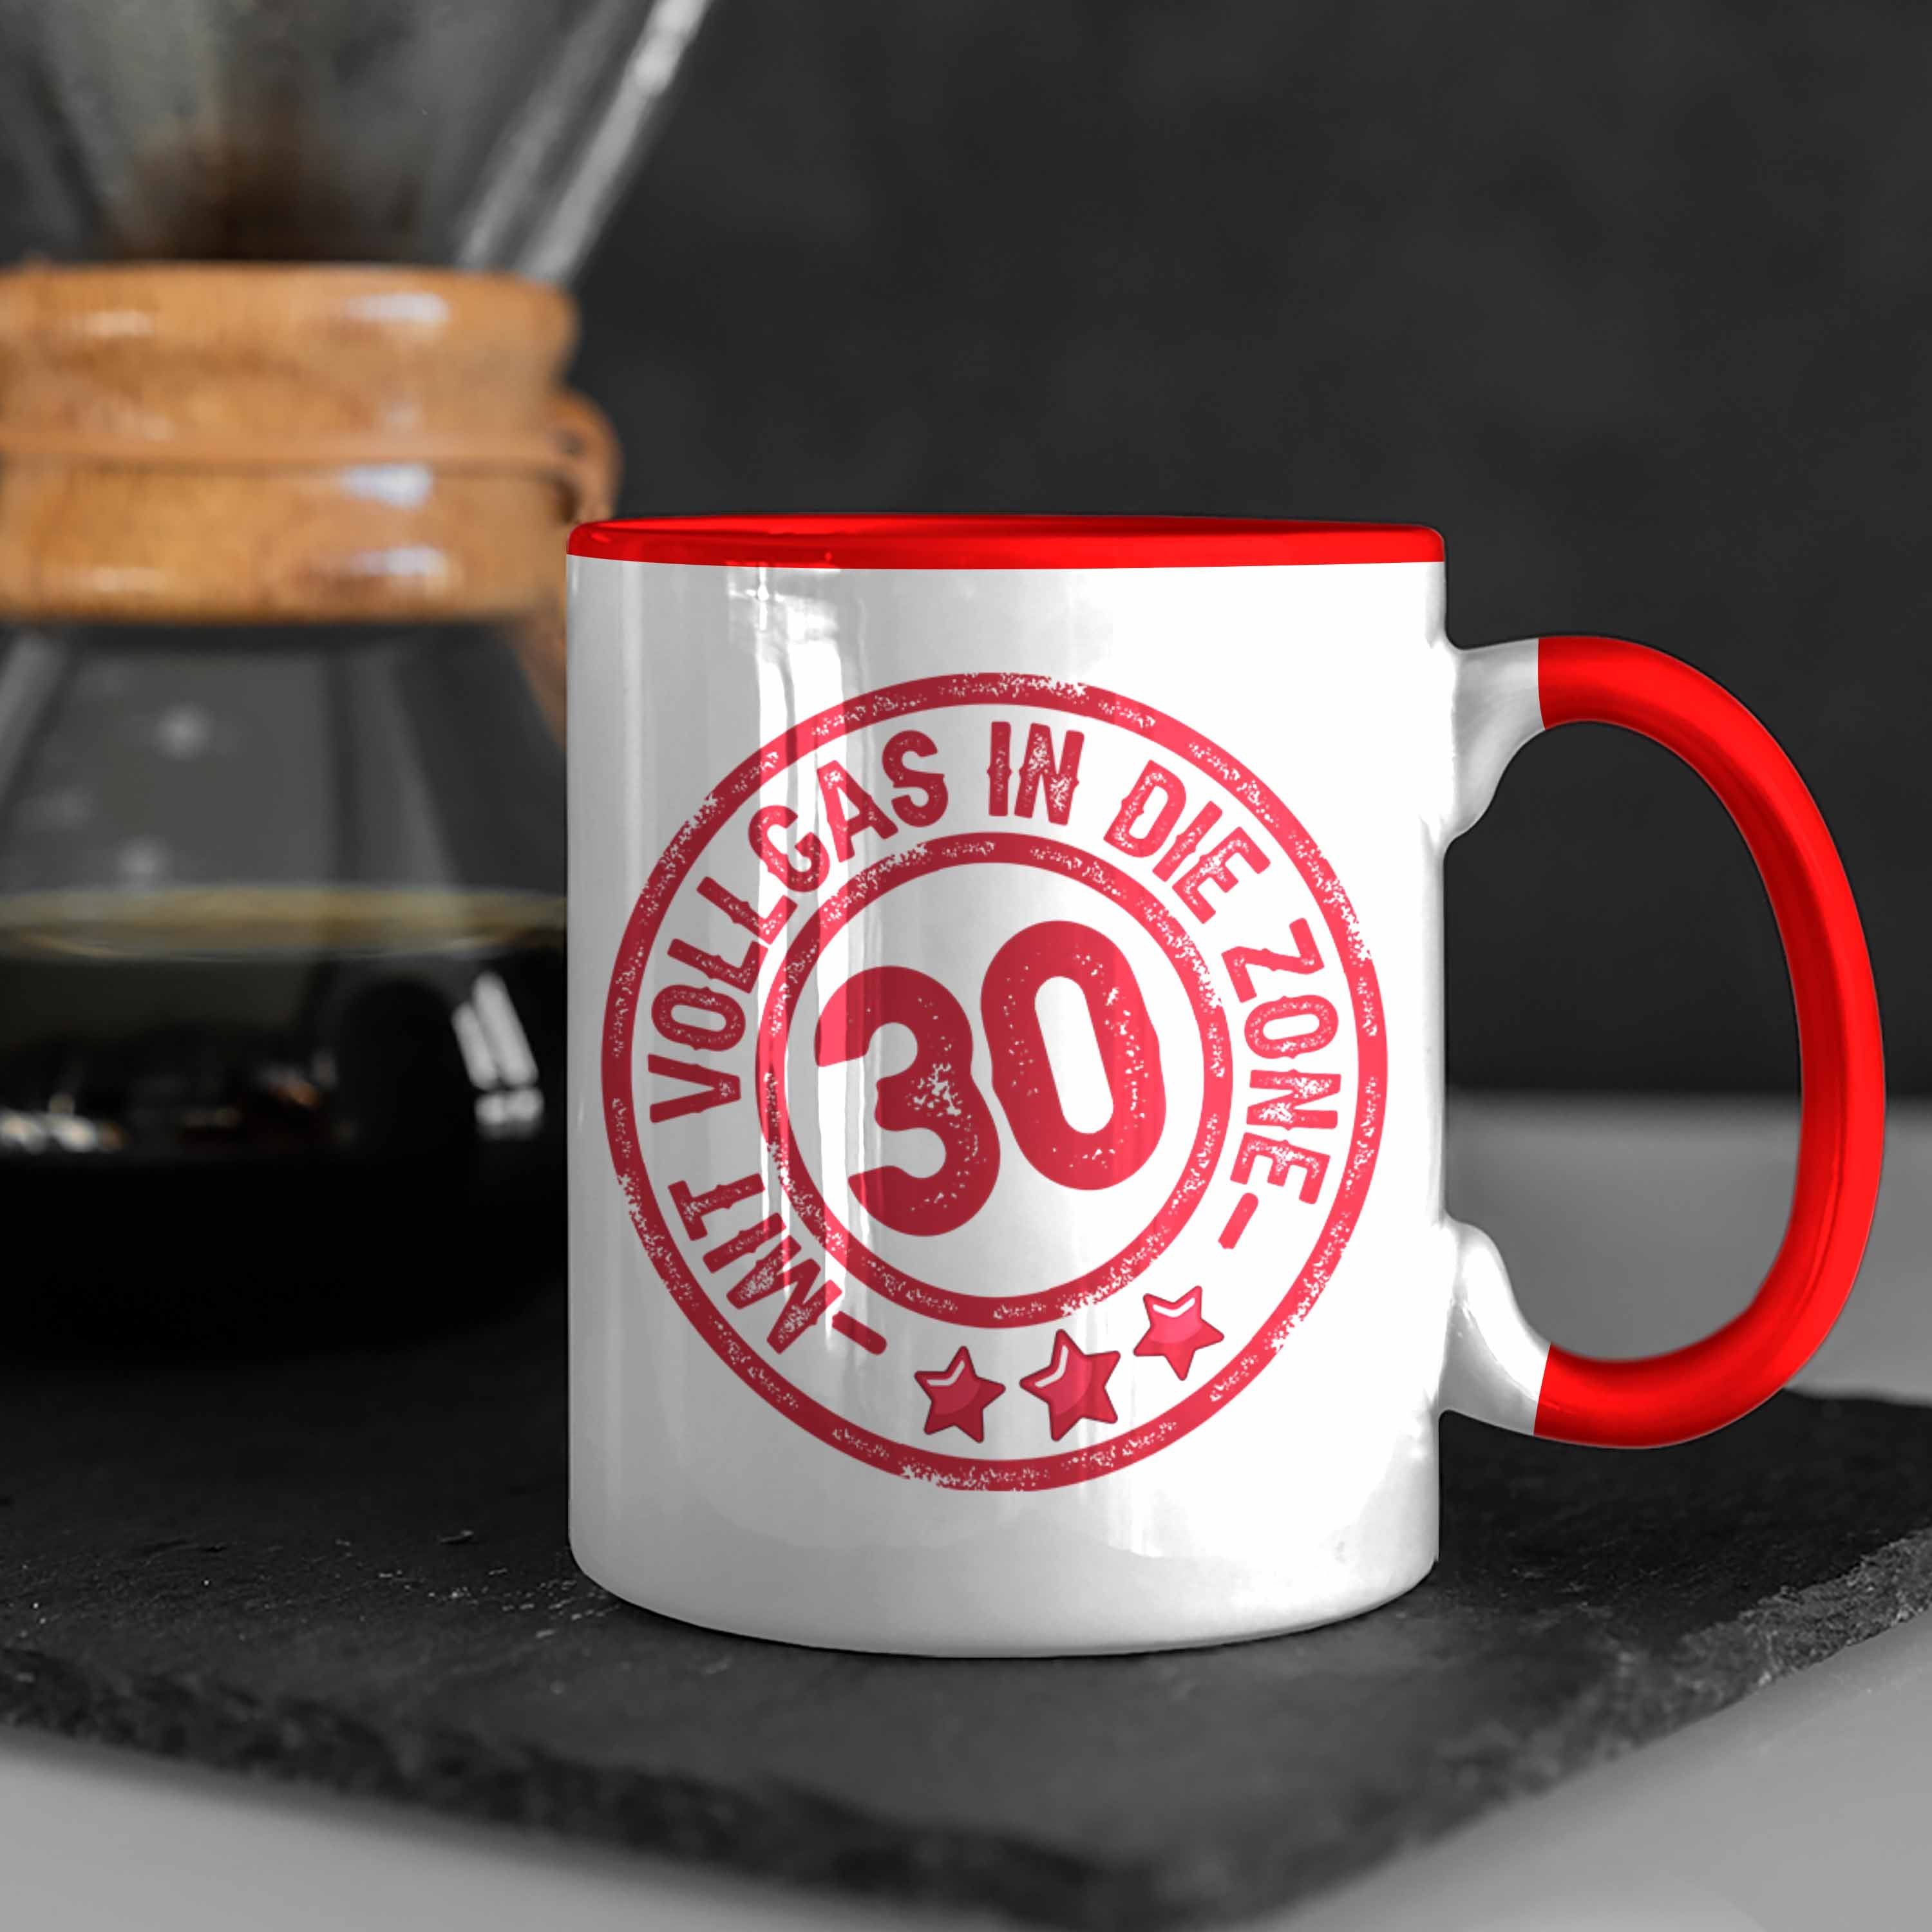 30er 30 Die Tasse Geschenk Kaffee-Becher Zon Tasse Rot Trendation Vollgas Mit In Geburtstag